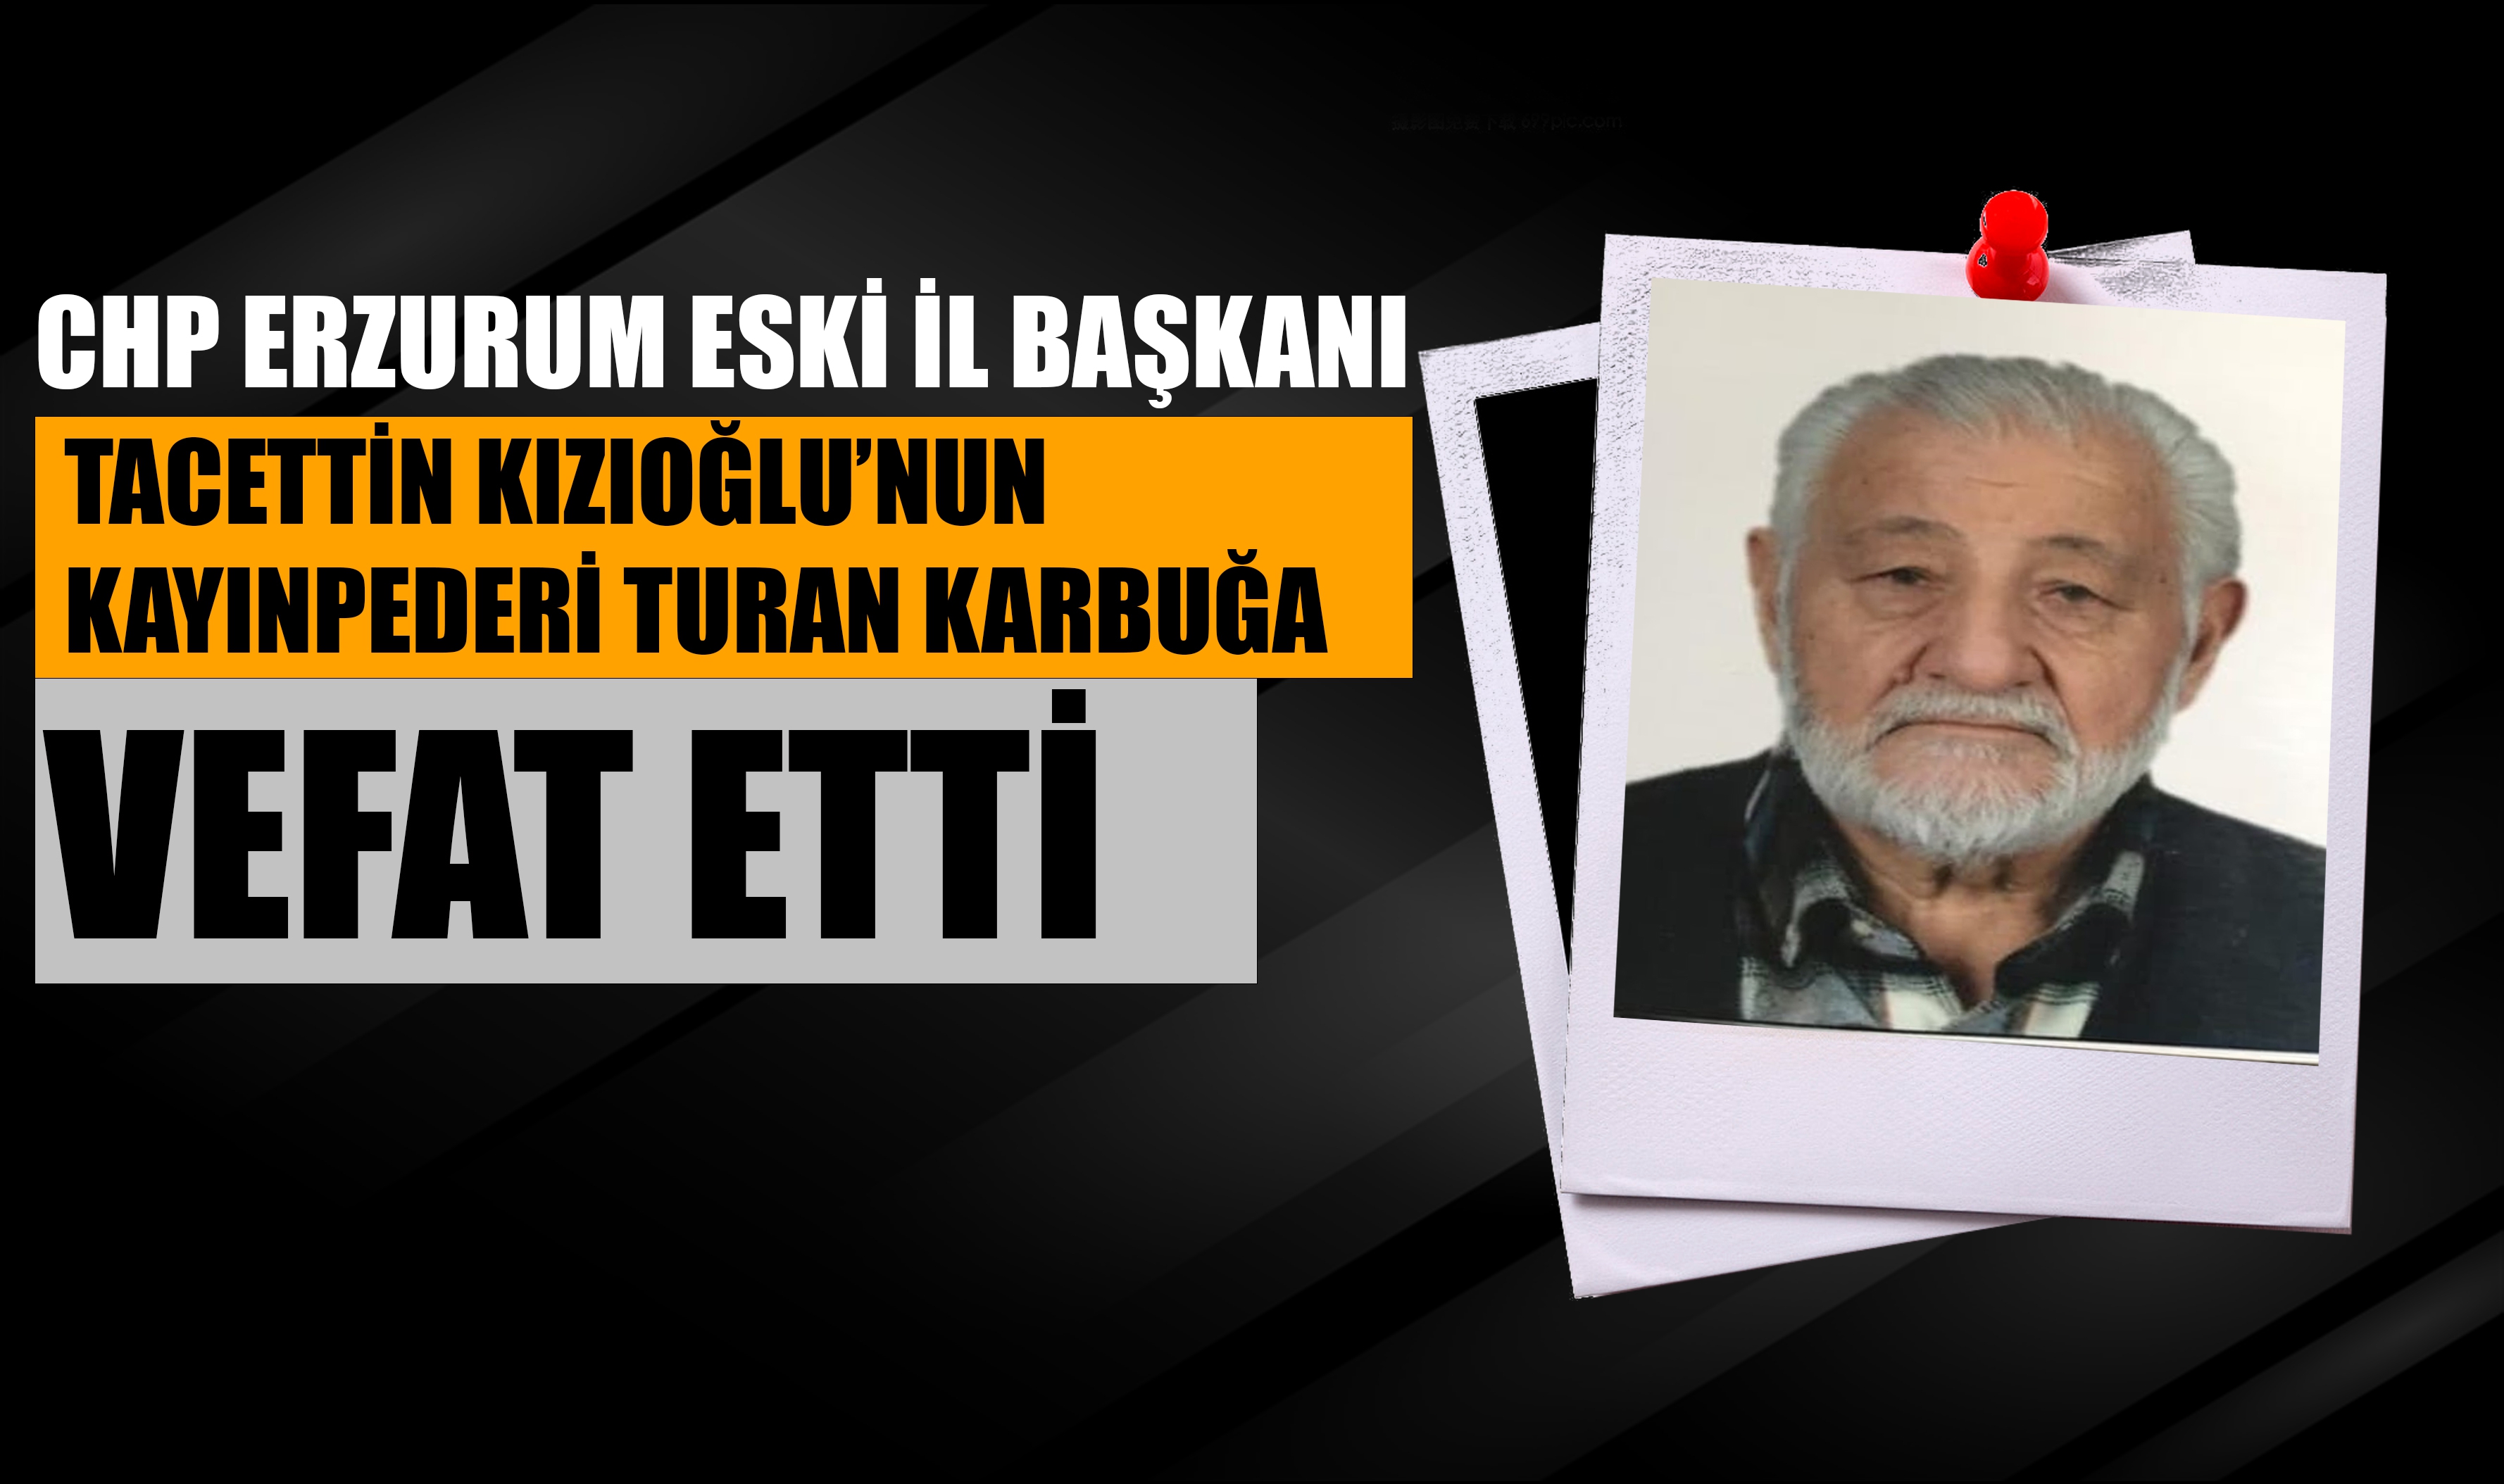 CHP Eski İl başkanı Tacettin Kızıoğlu'nun kayınpederi vefat etti